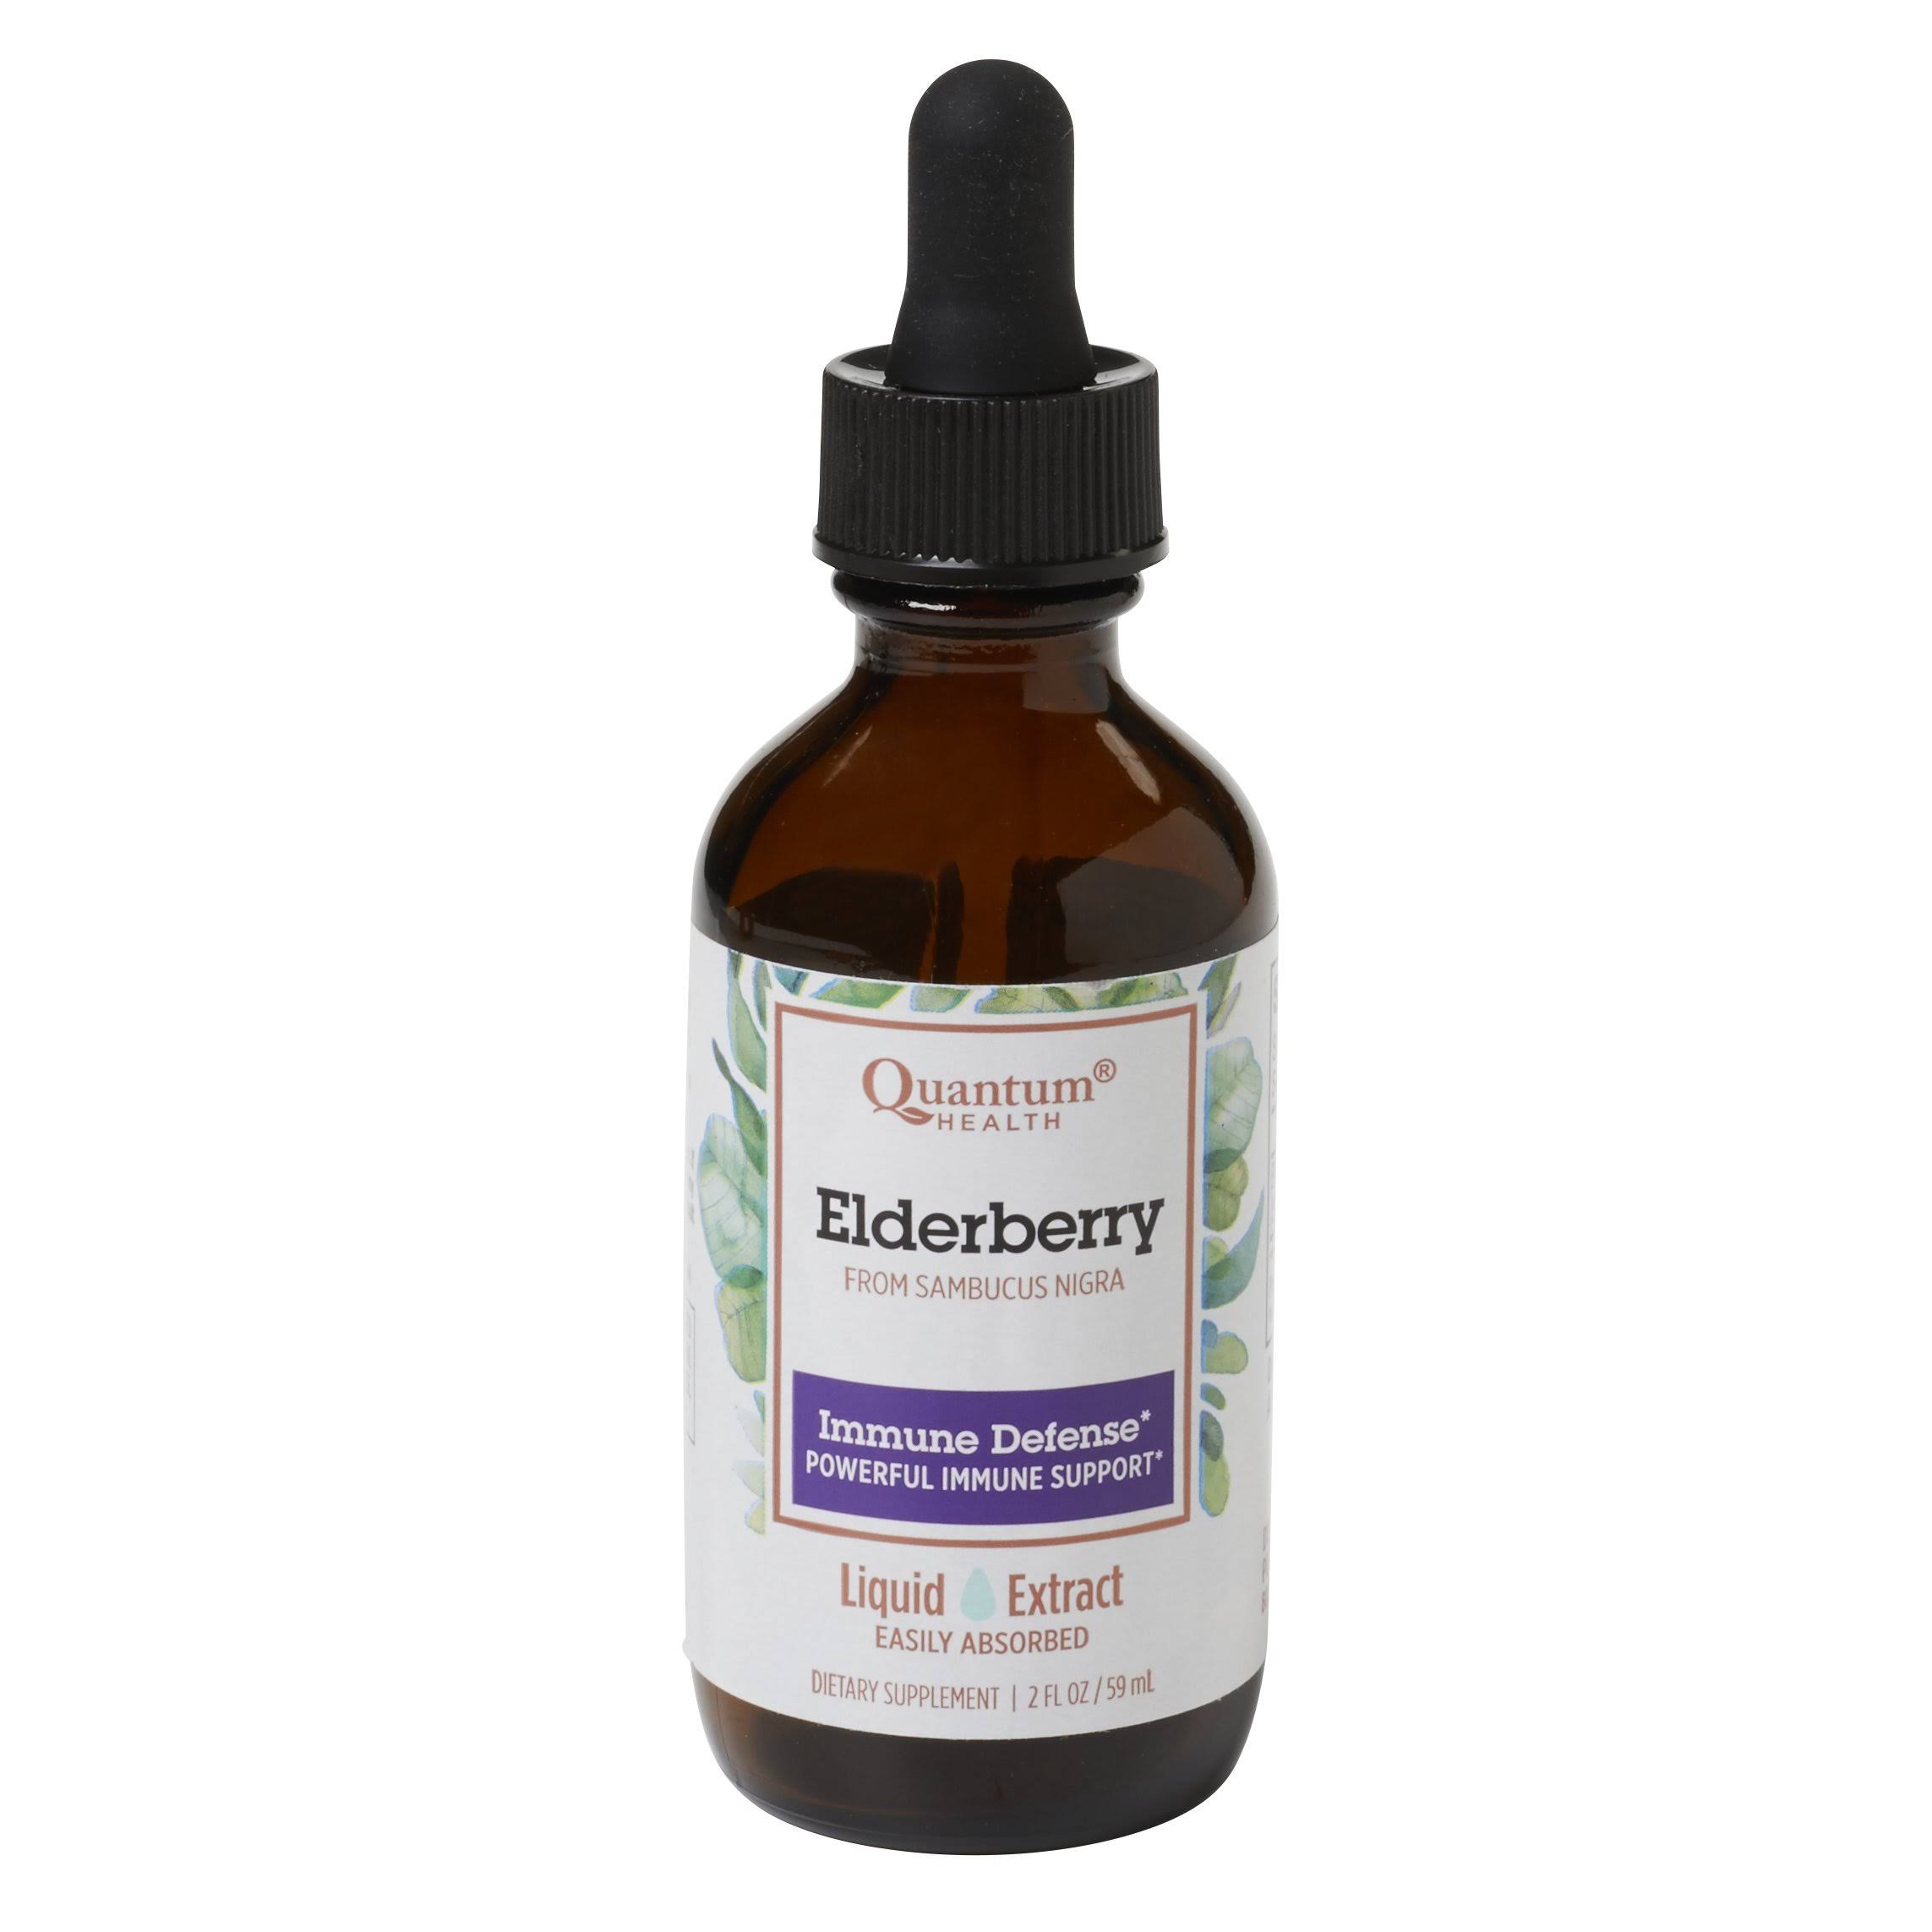 Quantum Health Elderberry Immune Defense Liquid Extract - 2oz